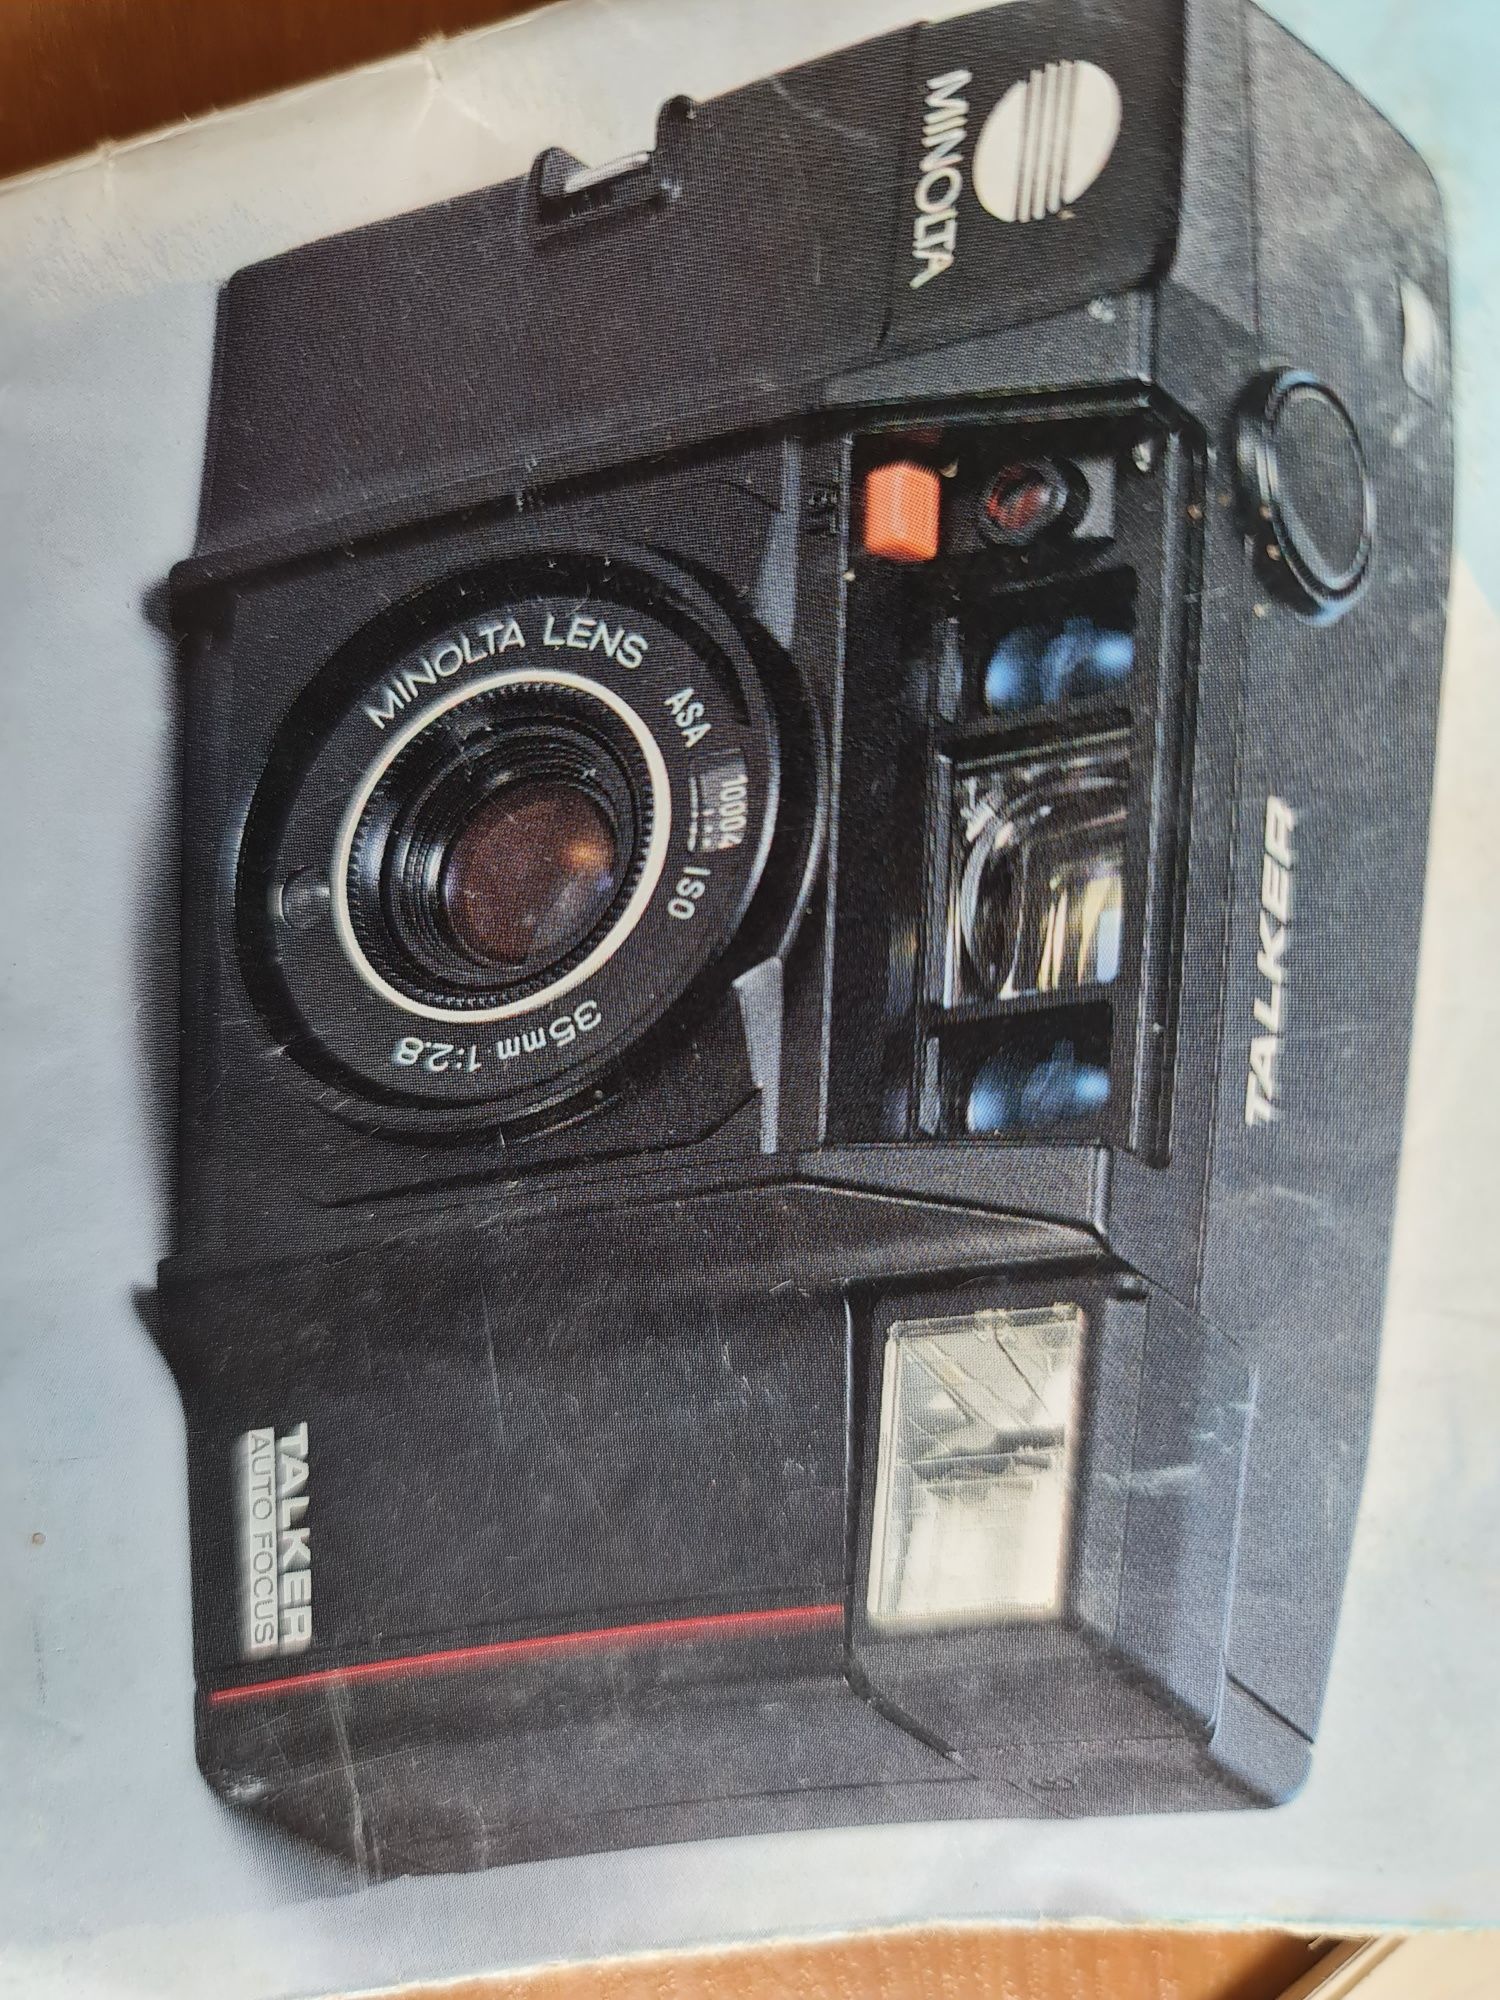 Instrukcja do aparatu fotograficznego Minolta Talker